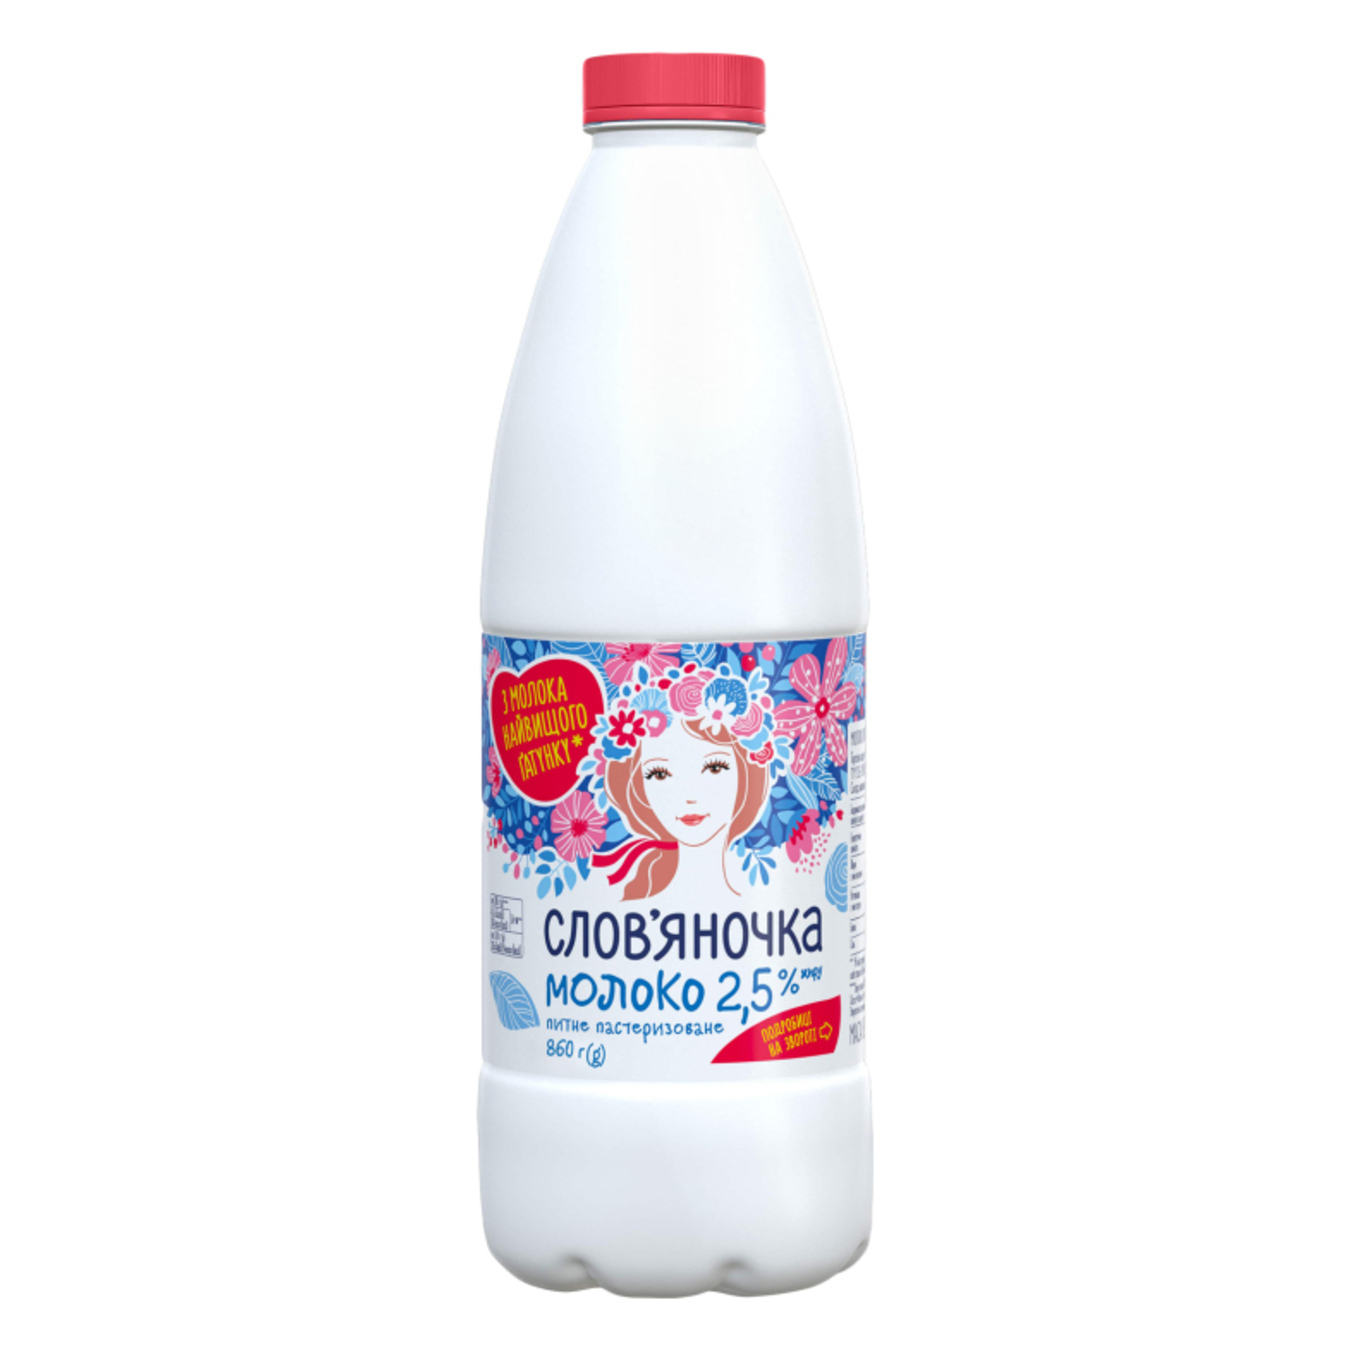 Молоко Славяночка 2,5% питьевая пастеризованная бутылка 860г